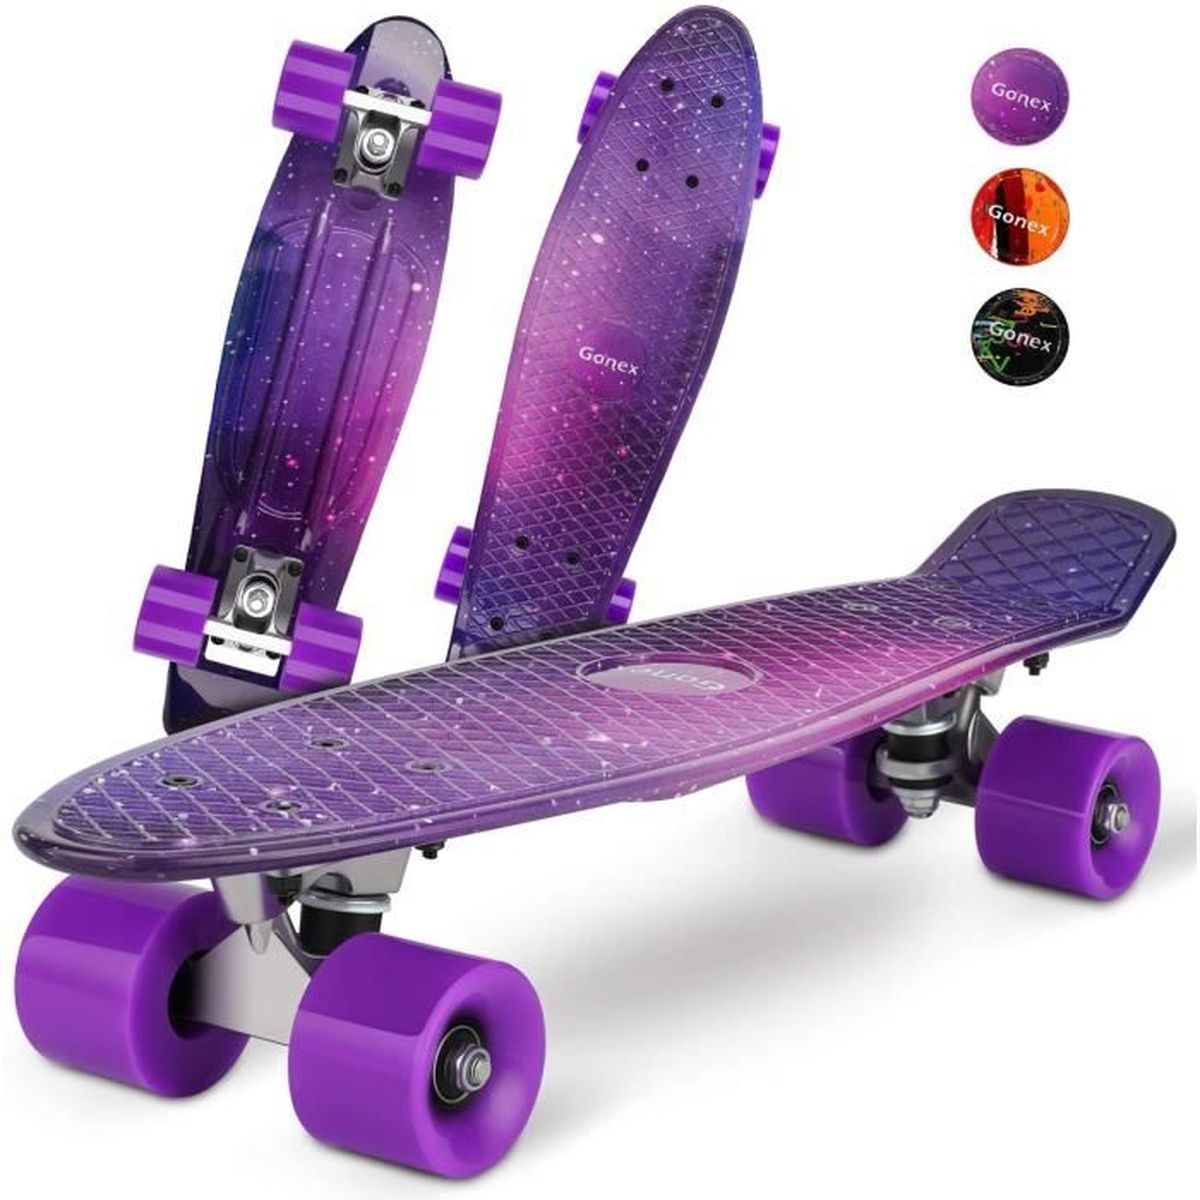 4 Roues Translucides PU ENKEEO Skateboard Planche à roulettes Retro Cruiser 22 Pouces Table en Plastique Renforcé Roulement ABEC-7 pour Fille Garçon et Adulte